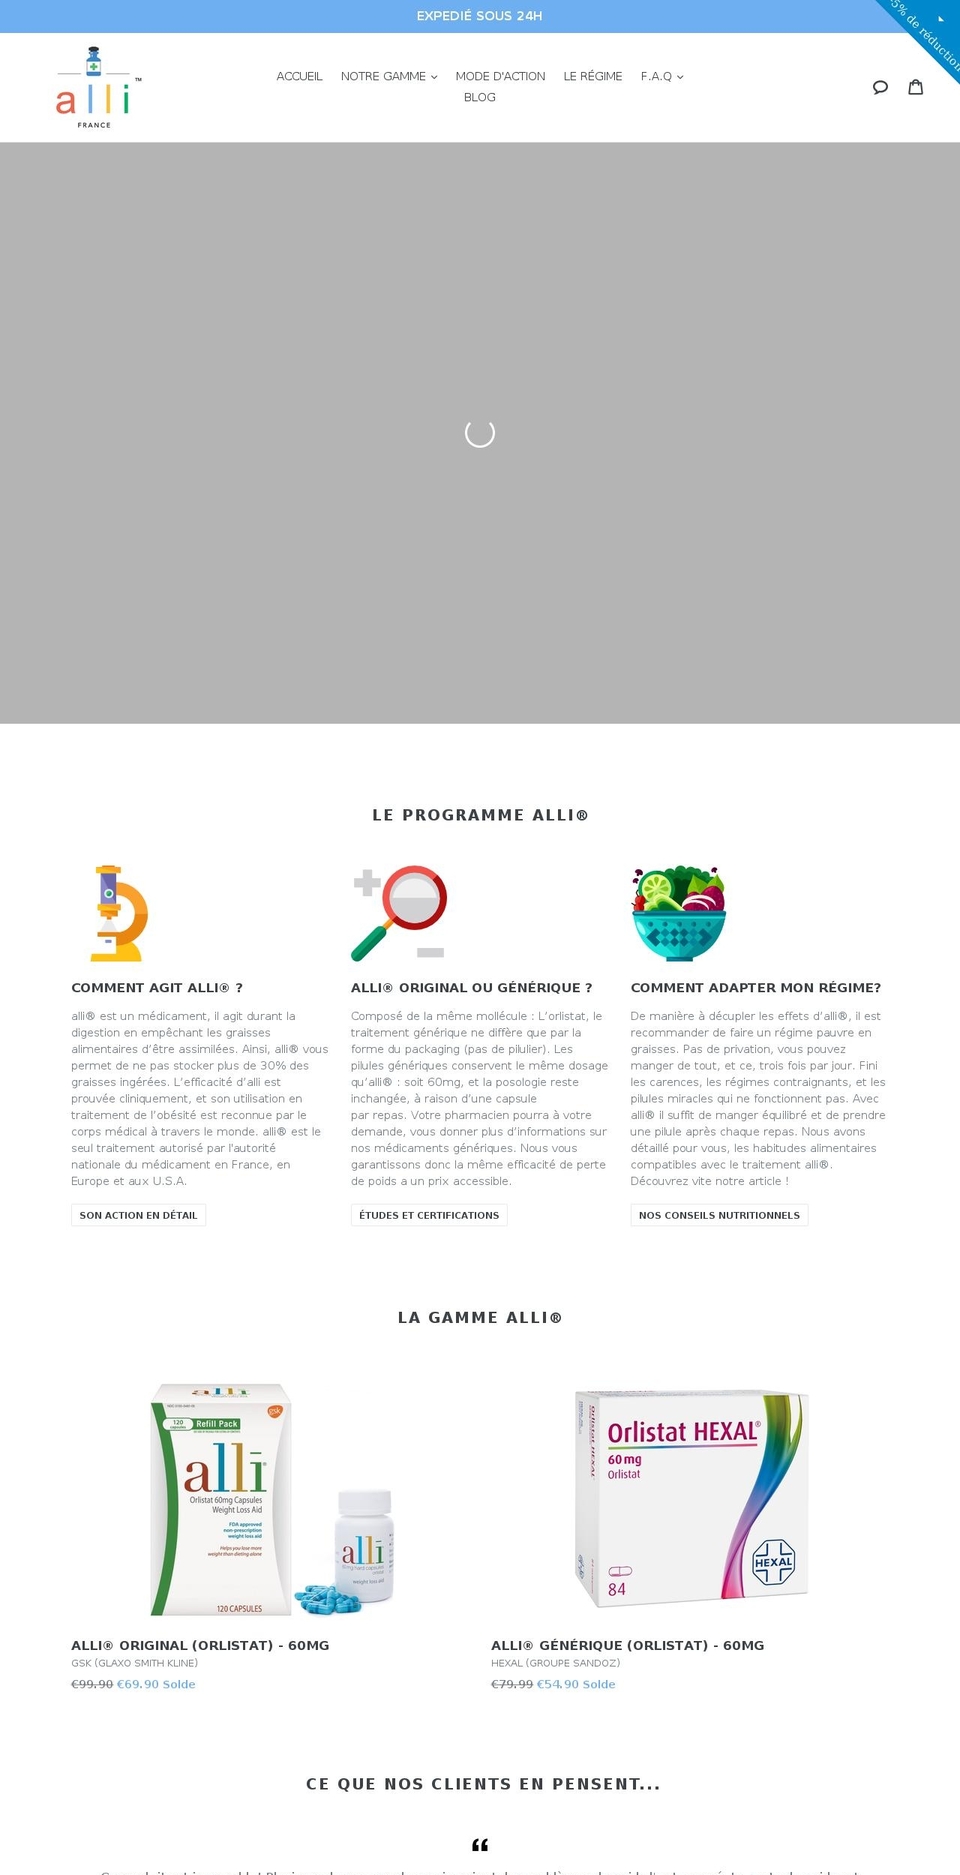 allifrance.fr shopify website screenshot